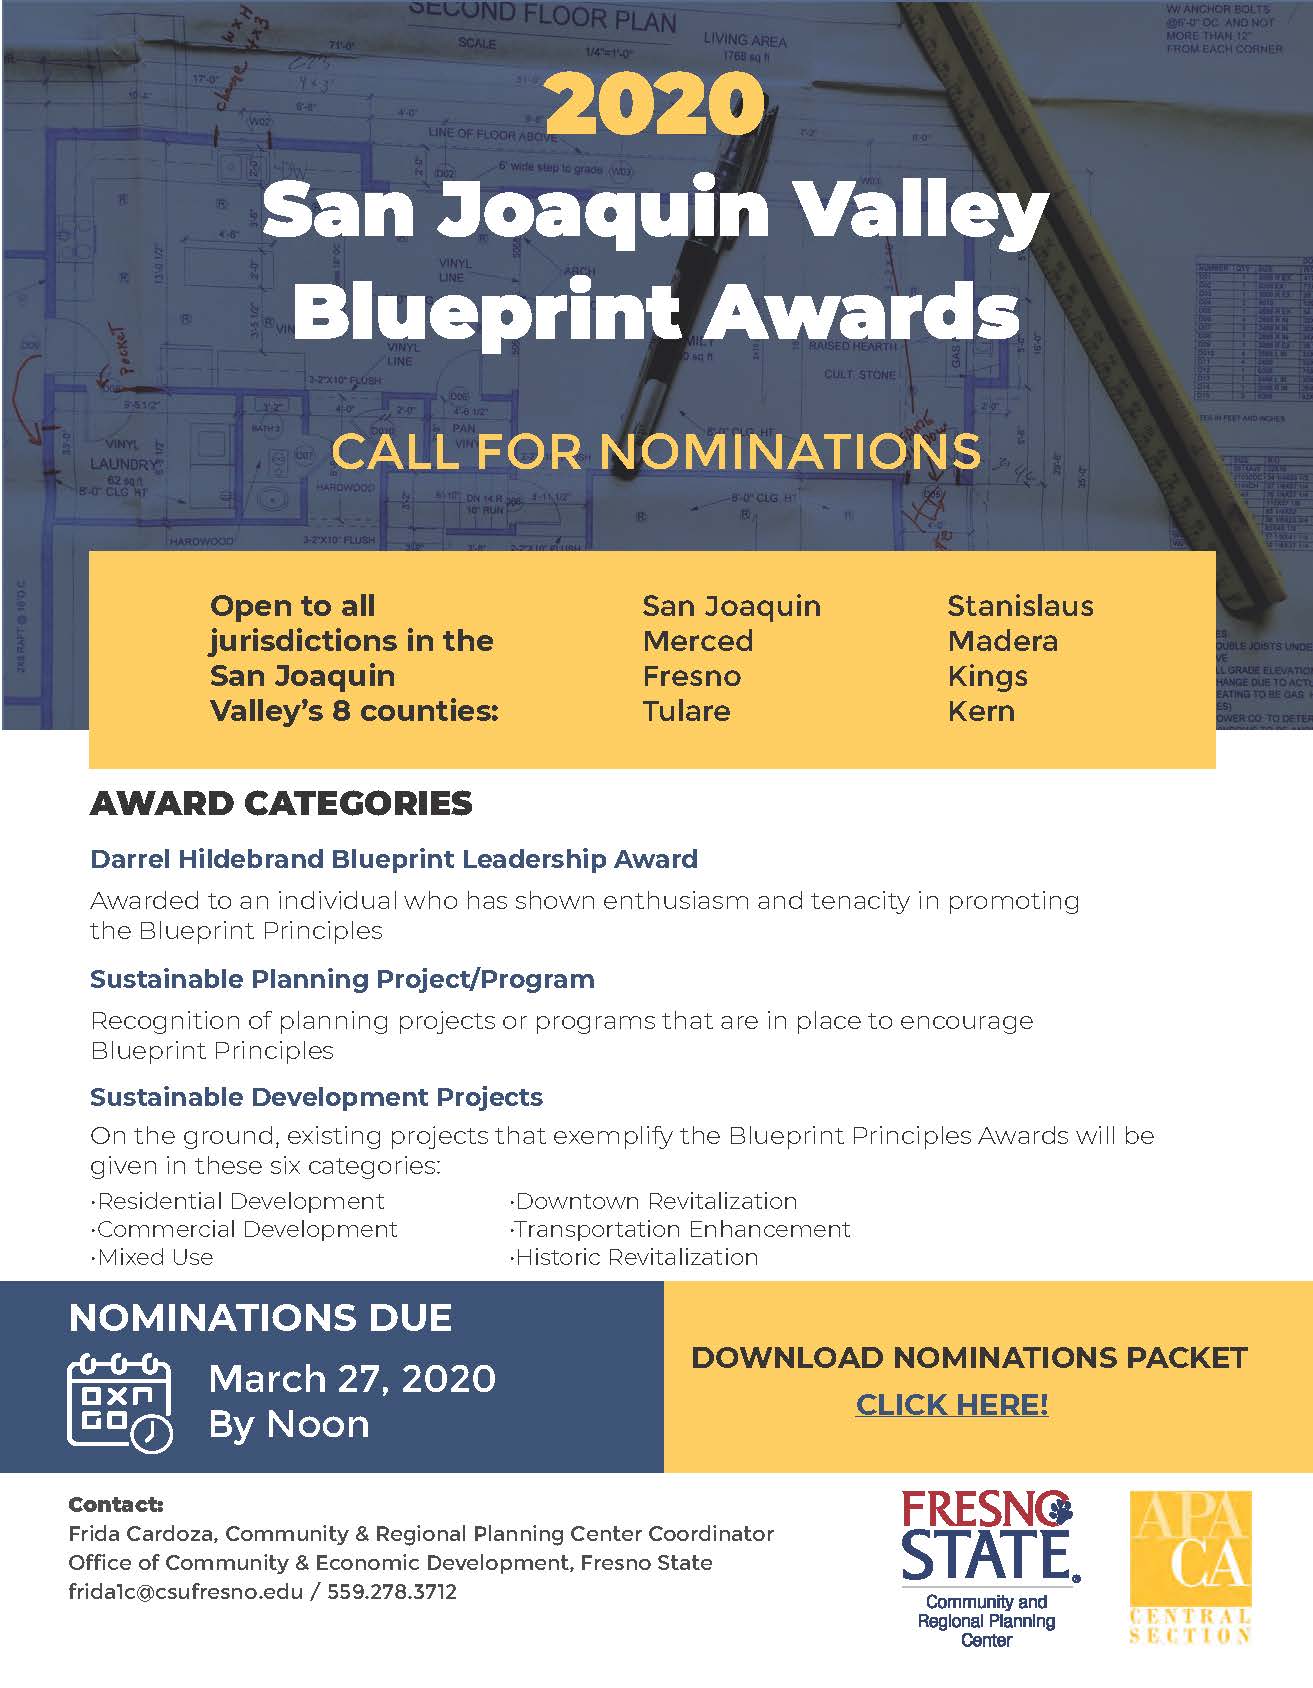 2020 blueprint awards